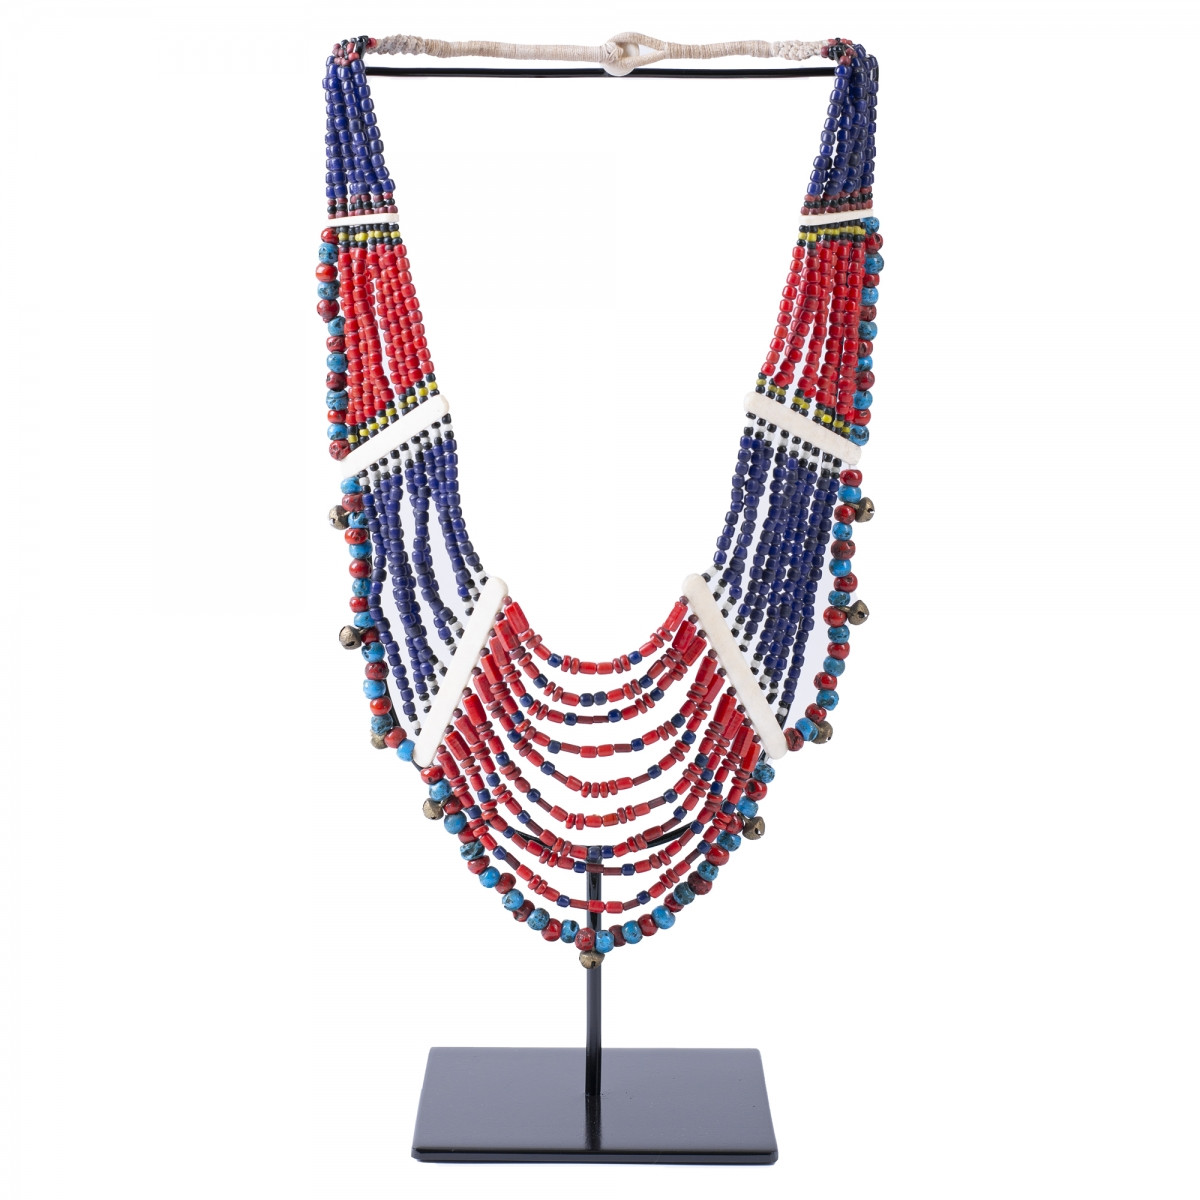 Этническое ожерелье на подставке Line Beads